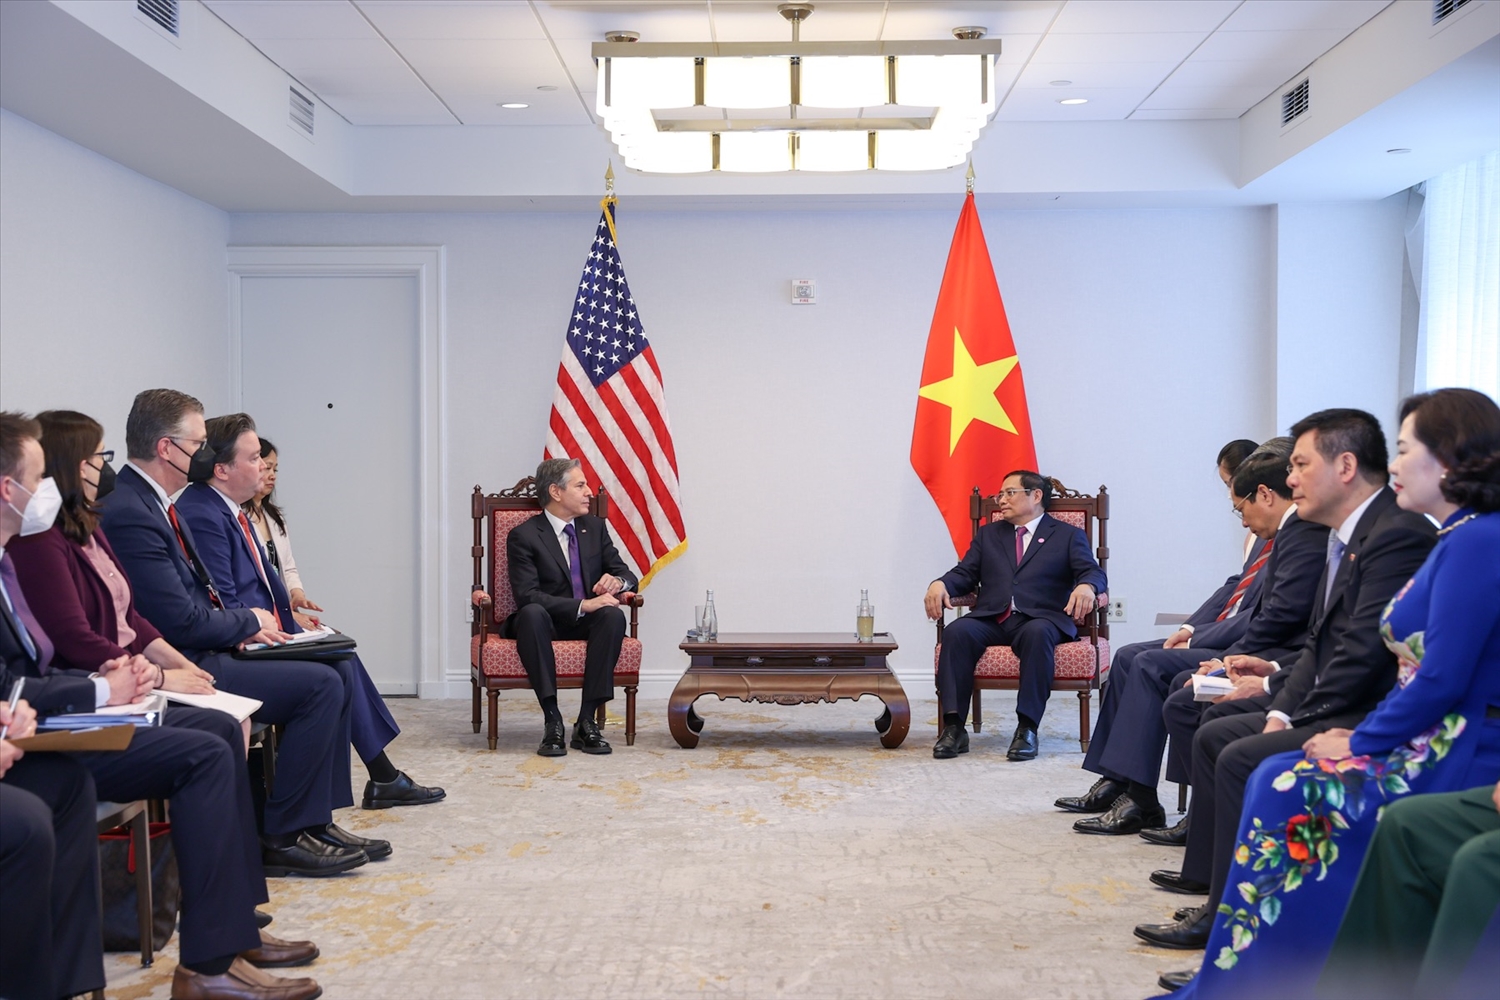 Ngoại trưởng Blinken hoan nghênh những cam kết của Việt Nam tại Hội nghị thượng đỉnh COP26, khẳng định Hoa Kỳ sẽ hỗ trợ Việt Nam thực hiện các cam kết này - Ảnh: VGP/Nhật Bắc